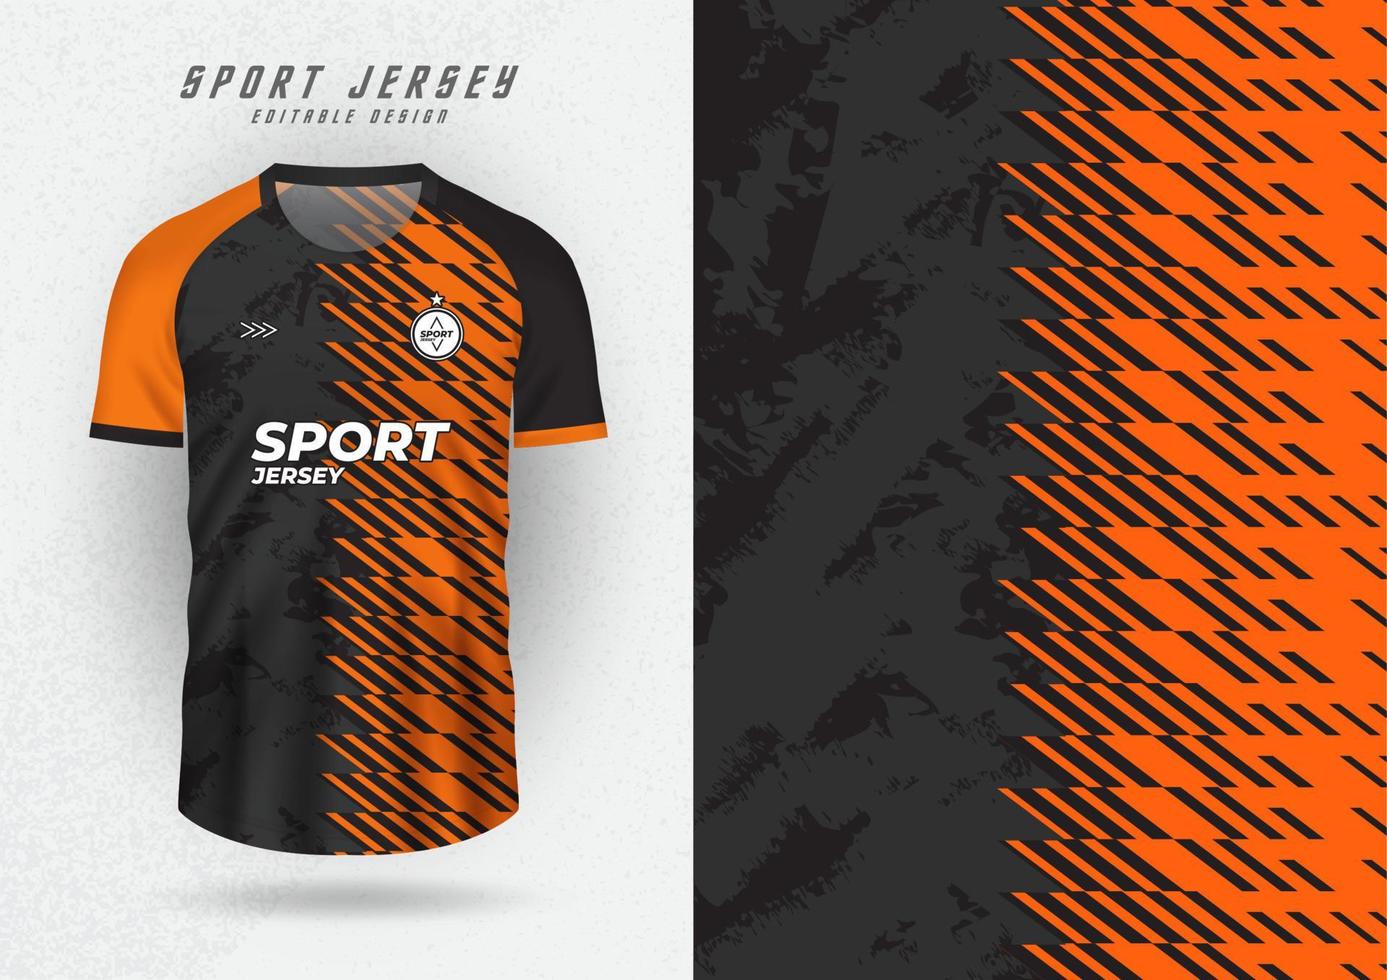 hintergrundmodell für sporttrikots, trikots, laufshirts, orange und schwarzes muster. vektor